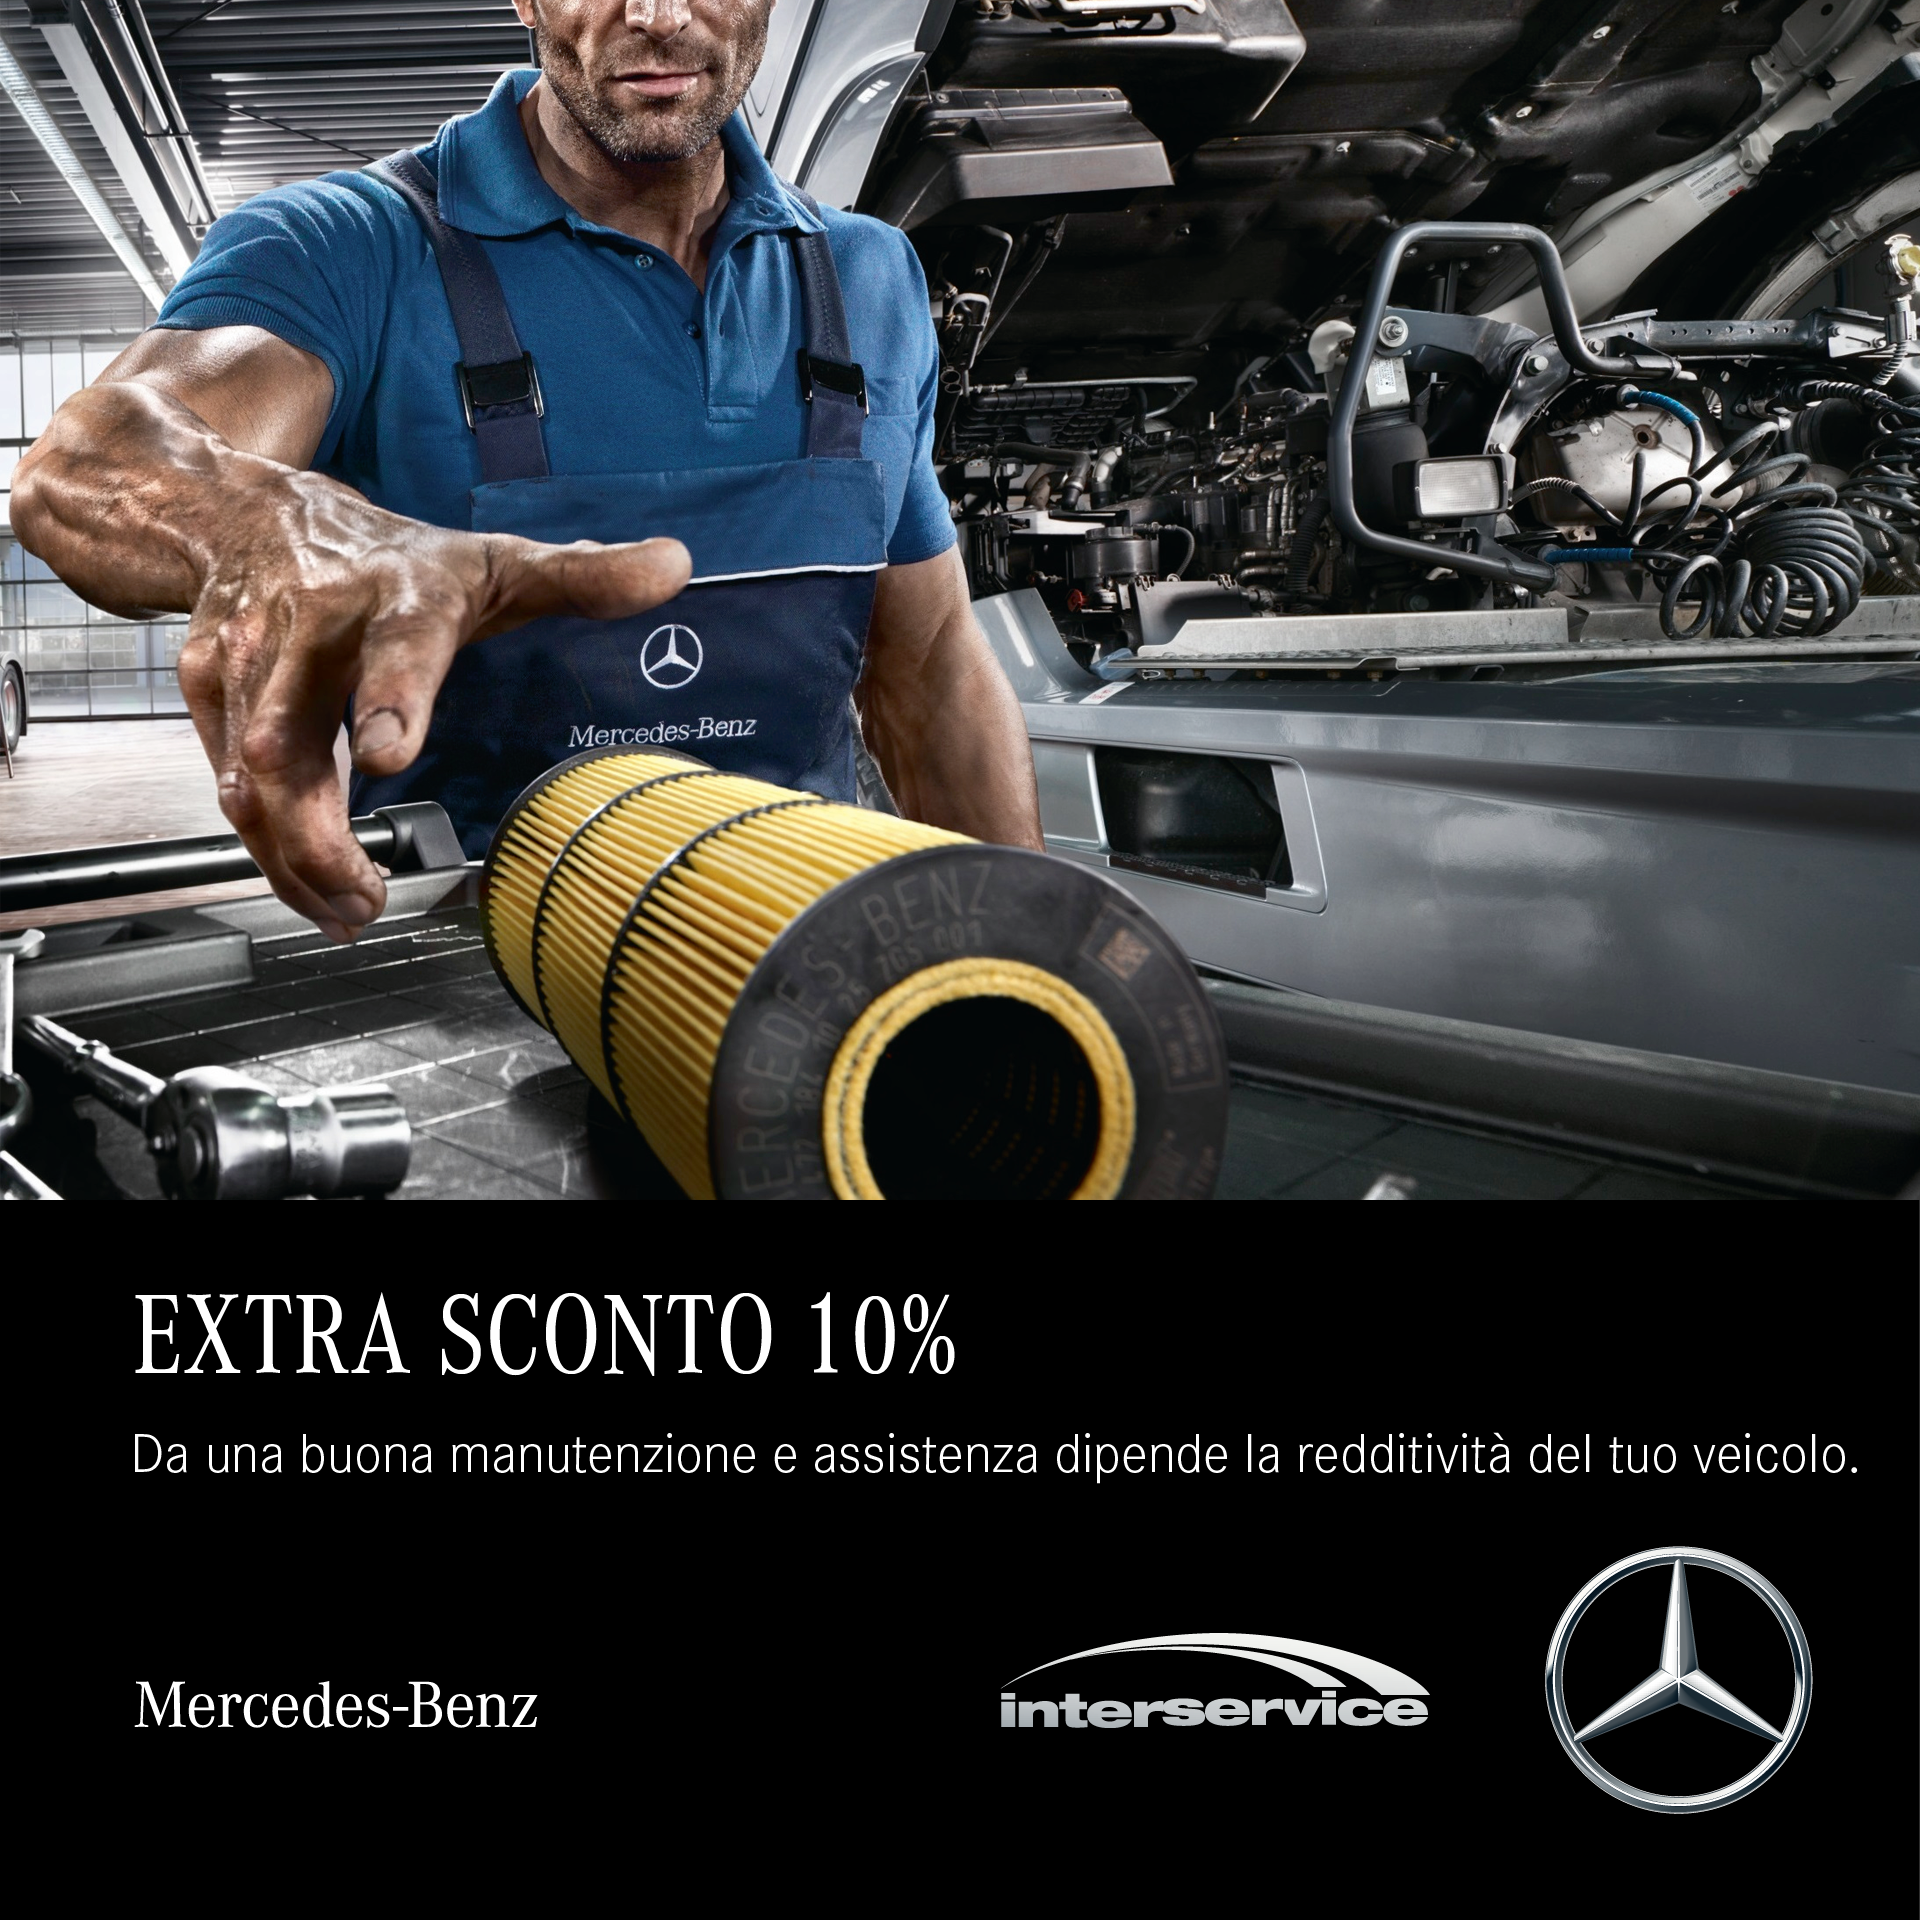 Mercedes Benz e Interservice Extra sconto